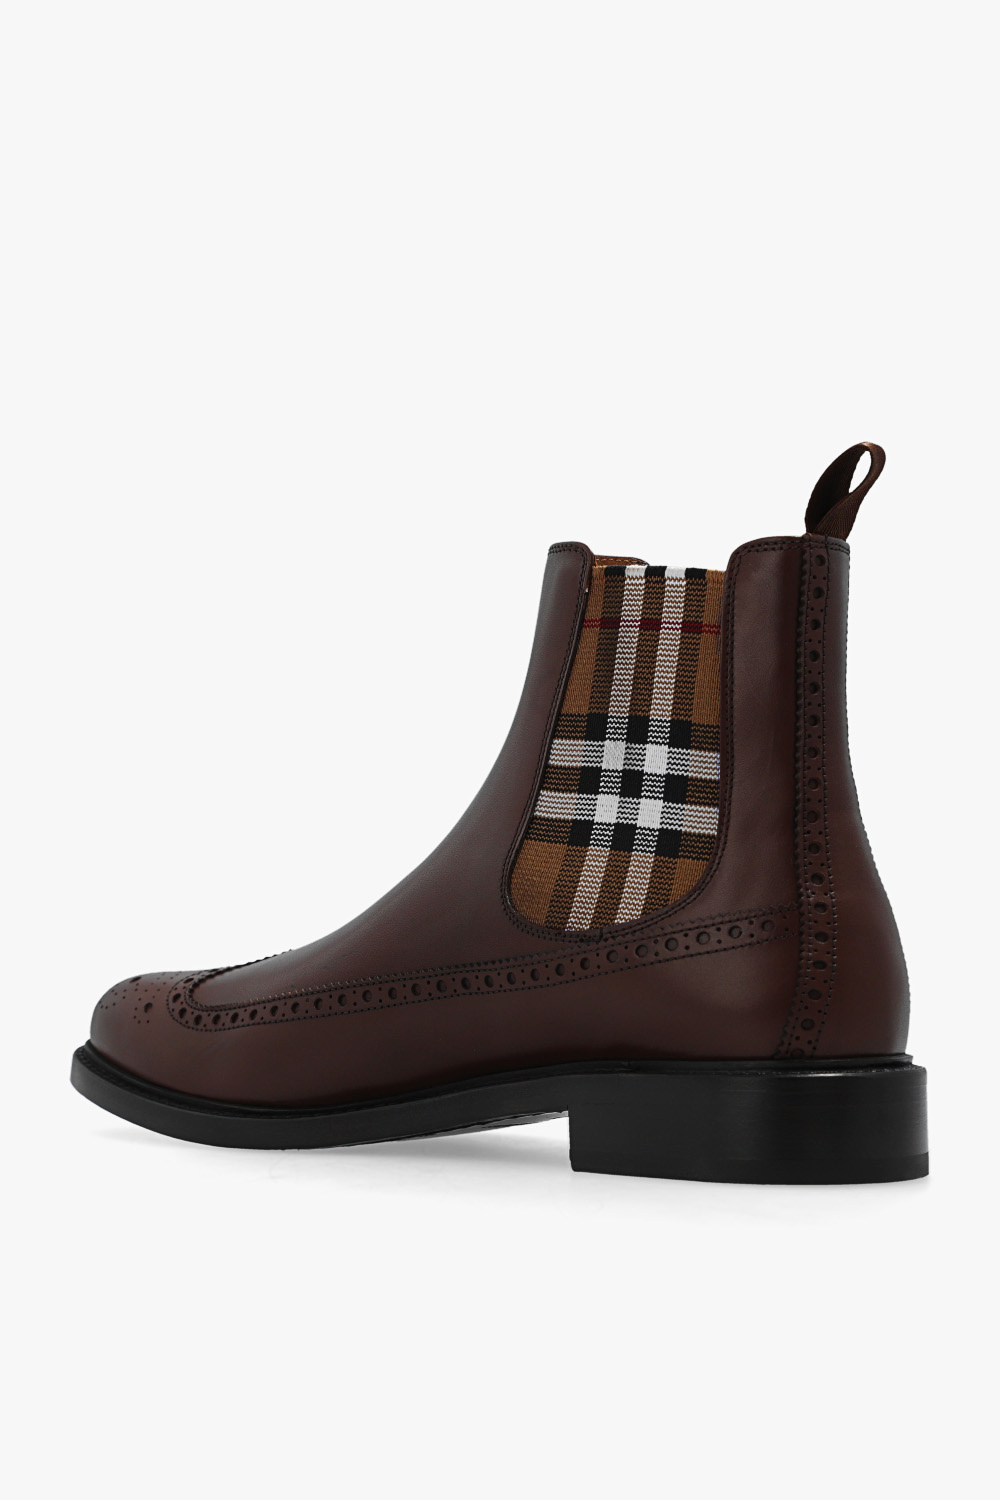 burberry Hemd ‘Tanner’ Chelsea boots